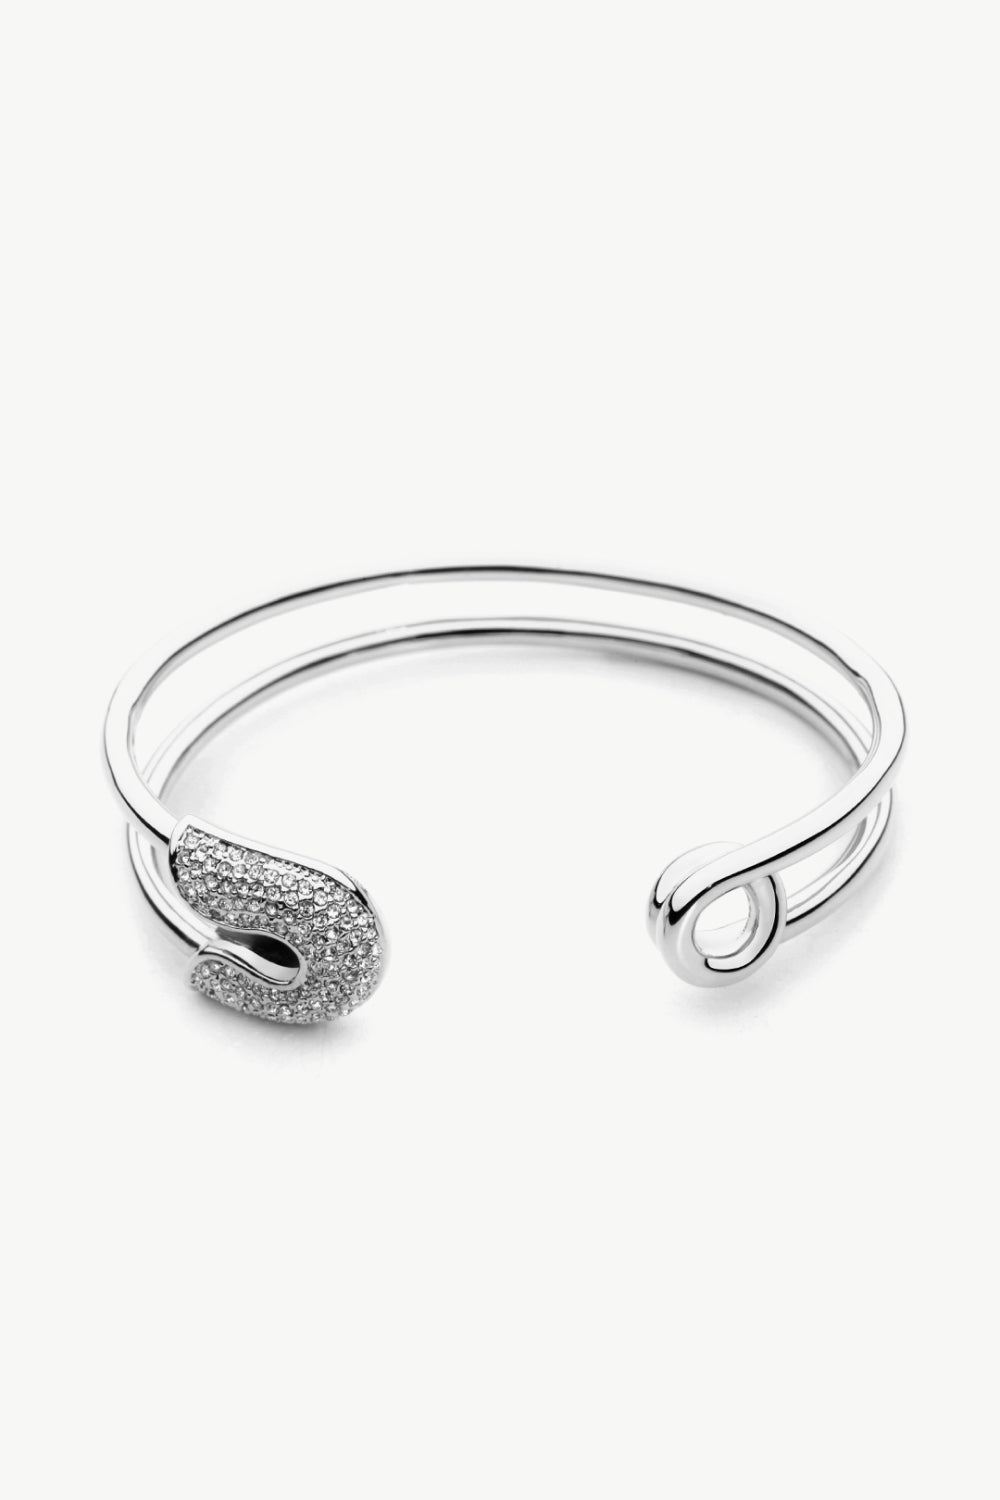 Rhinestone Double Hoop Bracelet - Women’s Jewelry - Bracelets - 6 - 2024